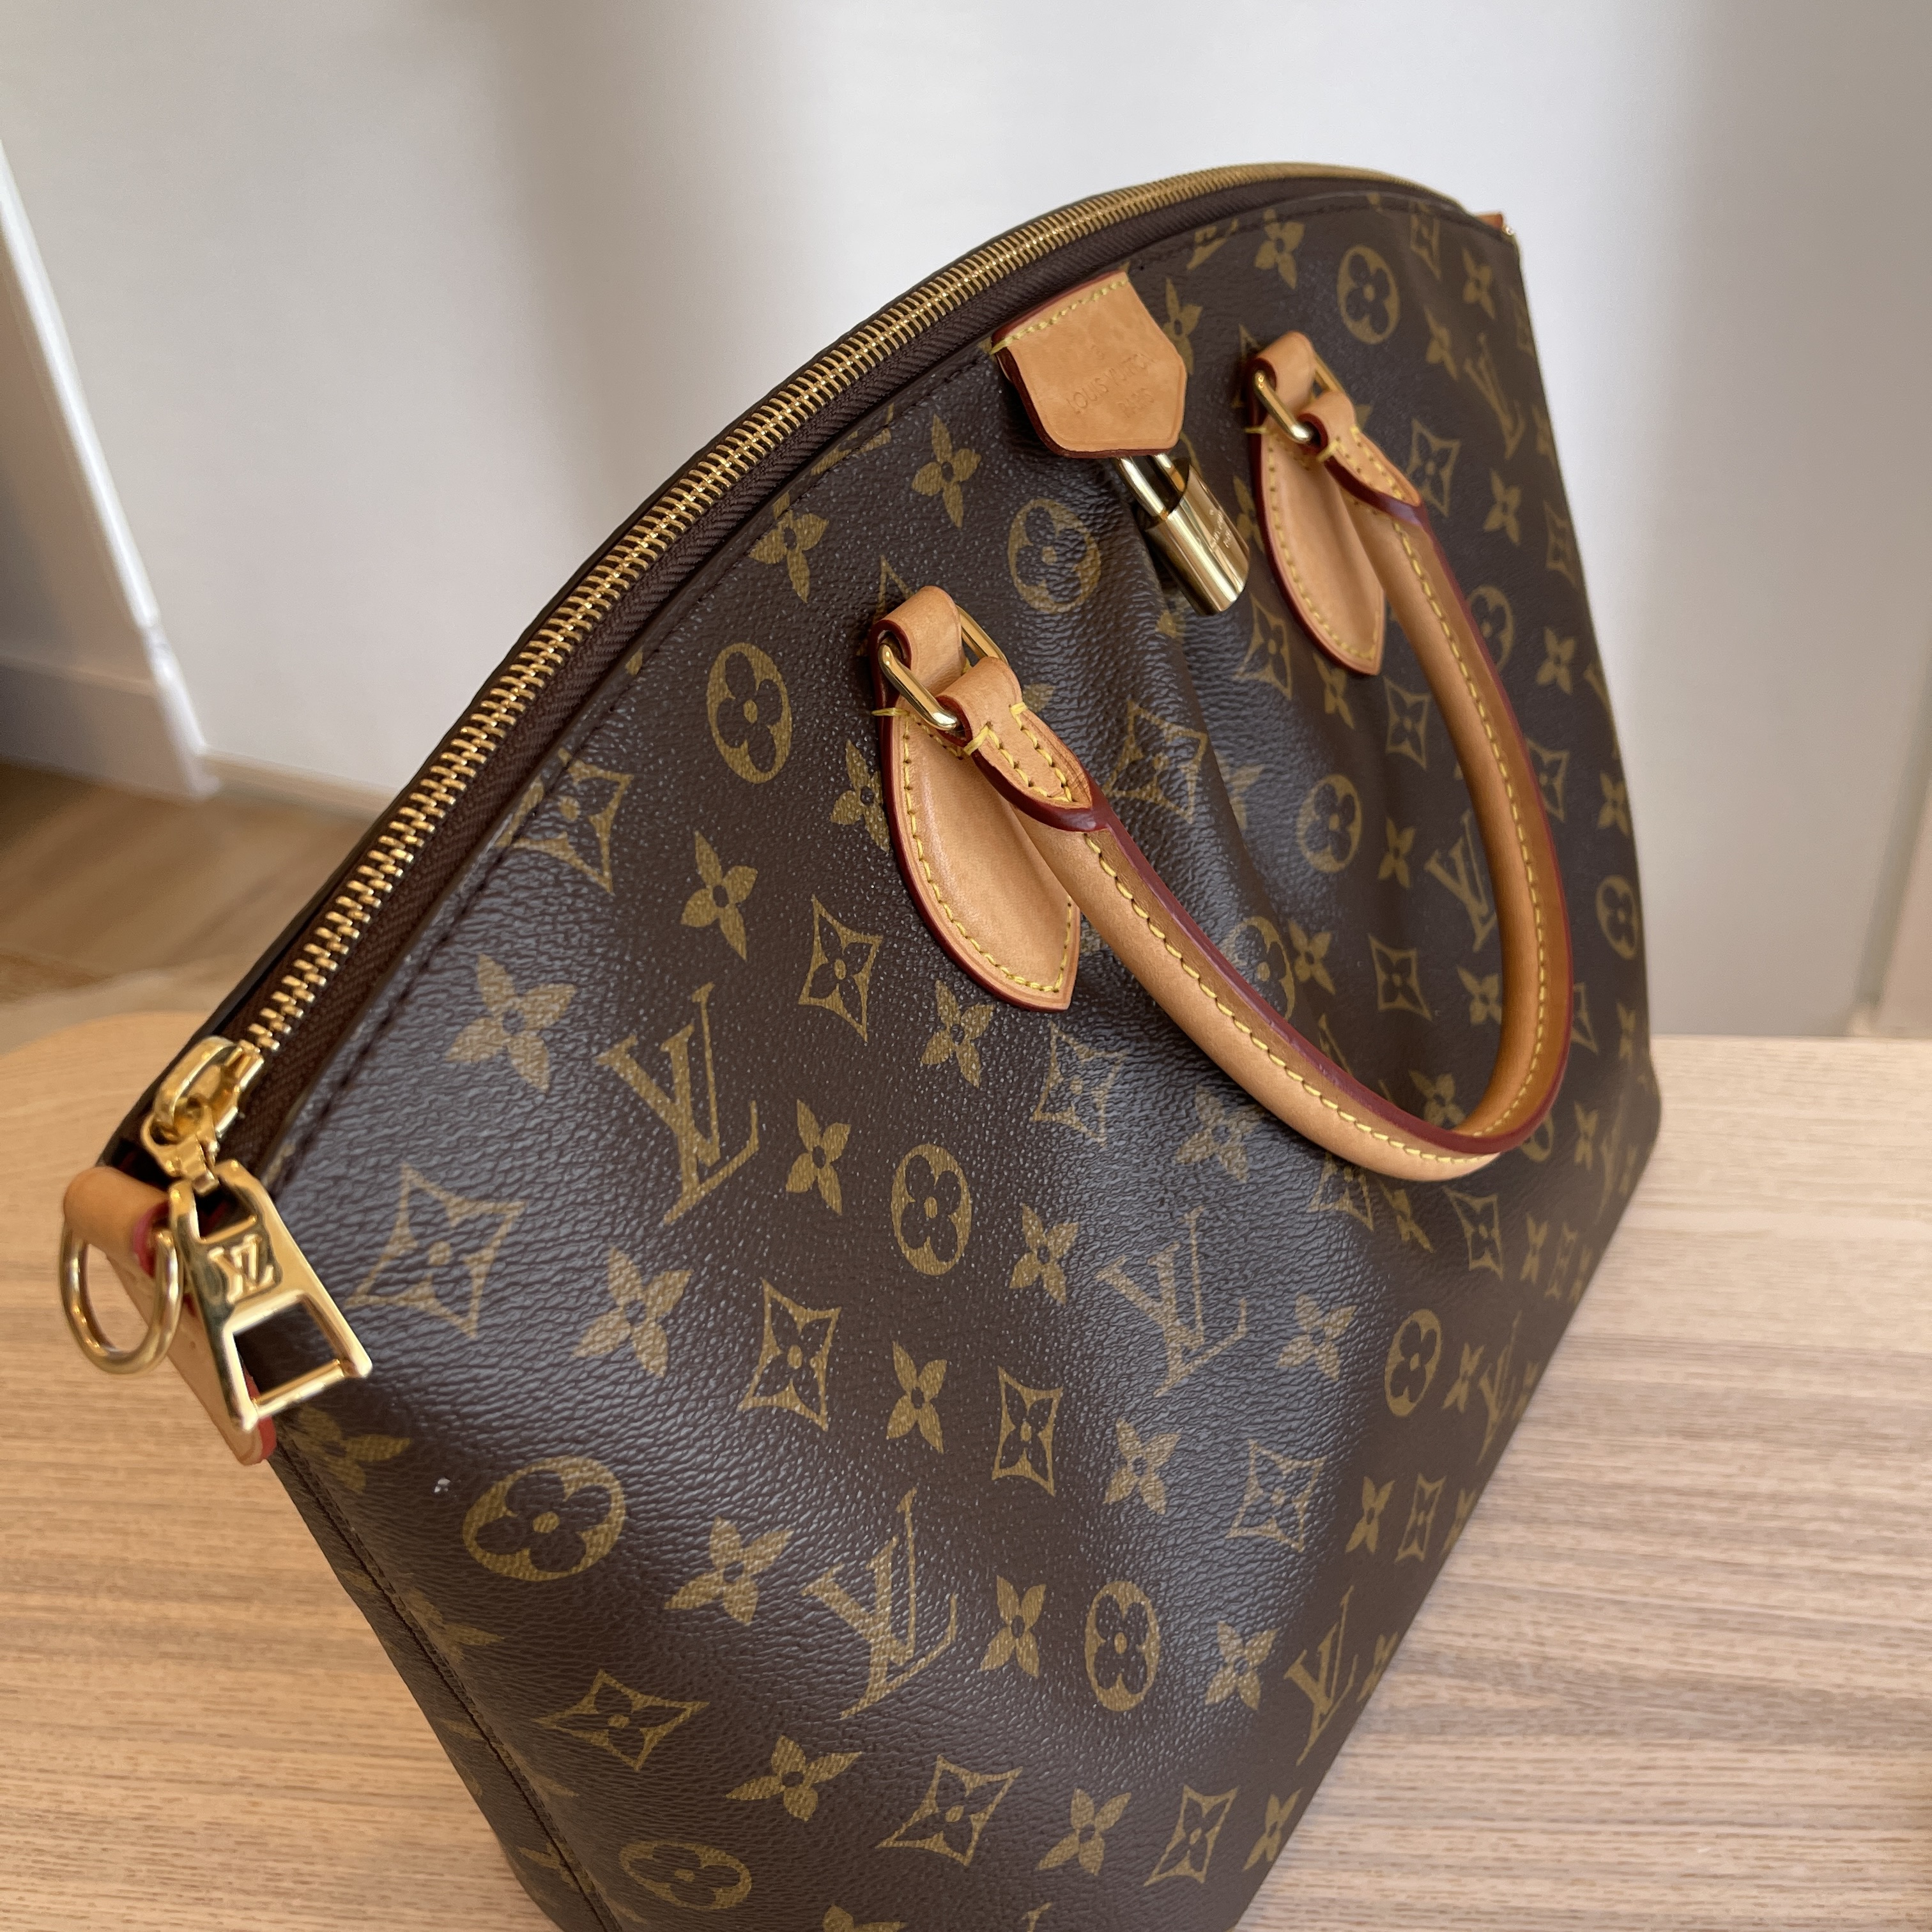 Louis Vuitton Monogram Canvas Boetie Mm (Authentic Pre-Owned) - ShopStyle  Shoulder Bags